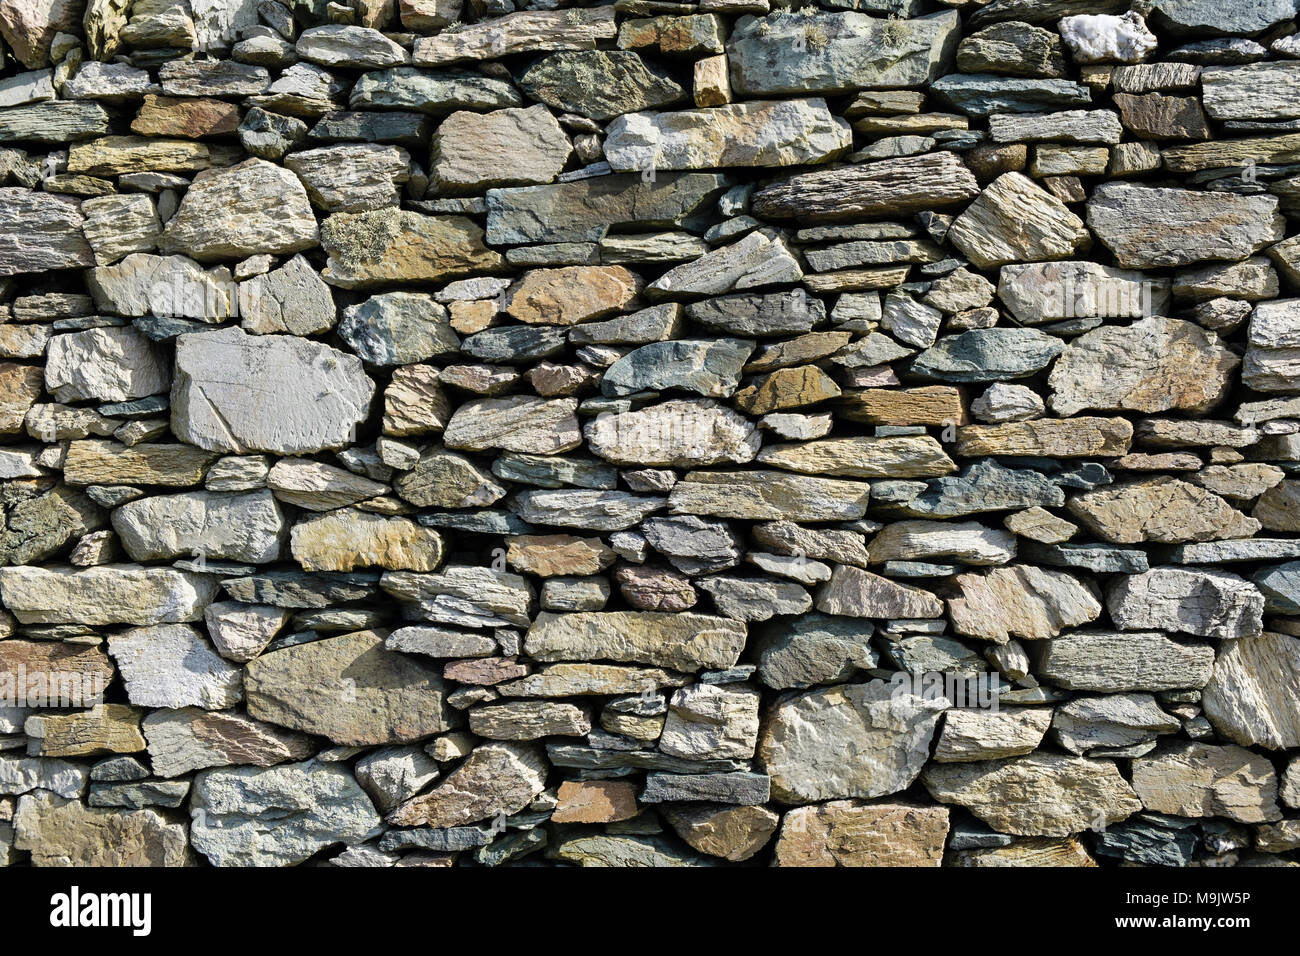 Piedras de diferentes formas, tamaños y colores, en un muro de piedra seca de rocas locales en Geopark. Rhoscolyn, Isla de Anglesey, Gales, Reino Unido, Gran Bretaña Foto de stock